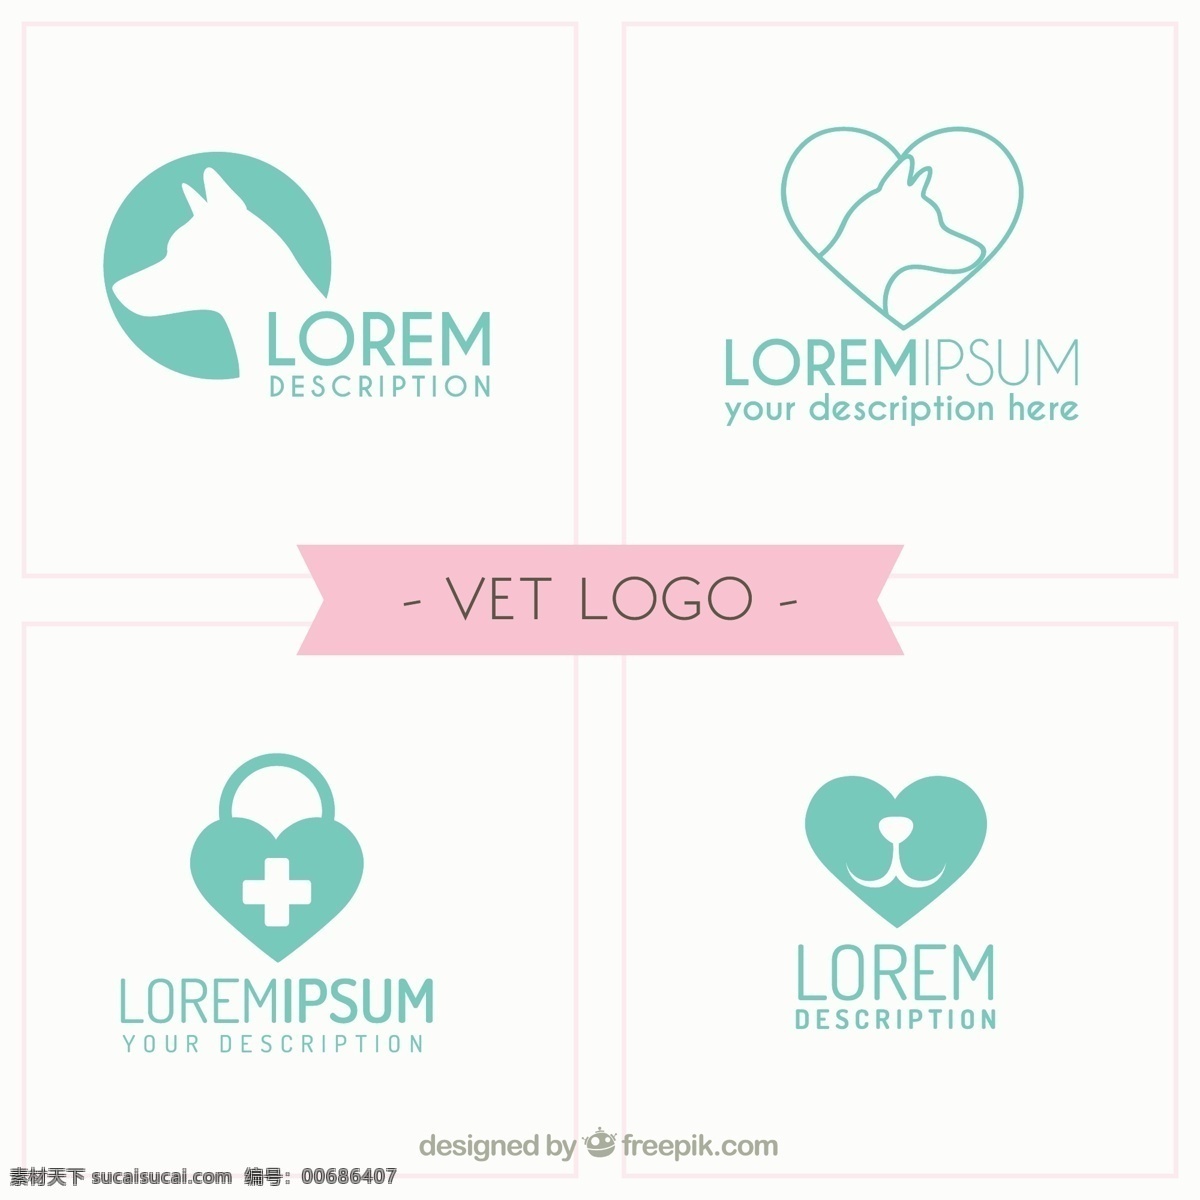 平面设计 中 兽医 标志 模板 标识 心脏 狗 医疗 健康 医生 平面 动物 医院 企业 公司 品牌 符号 身份 白色